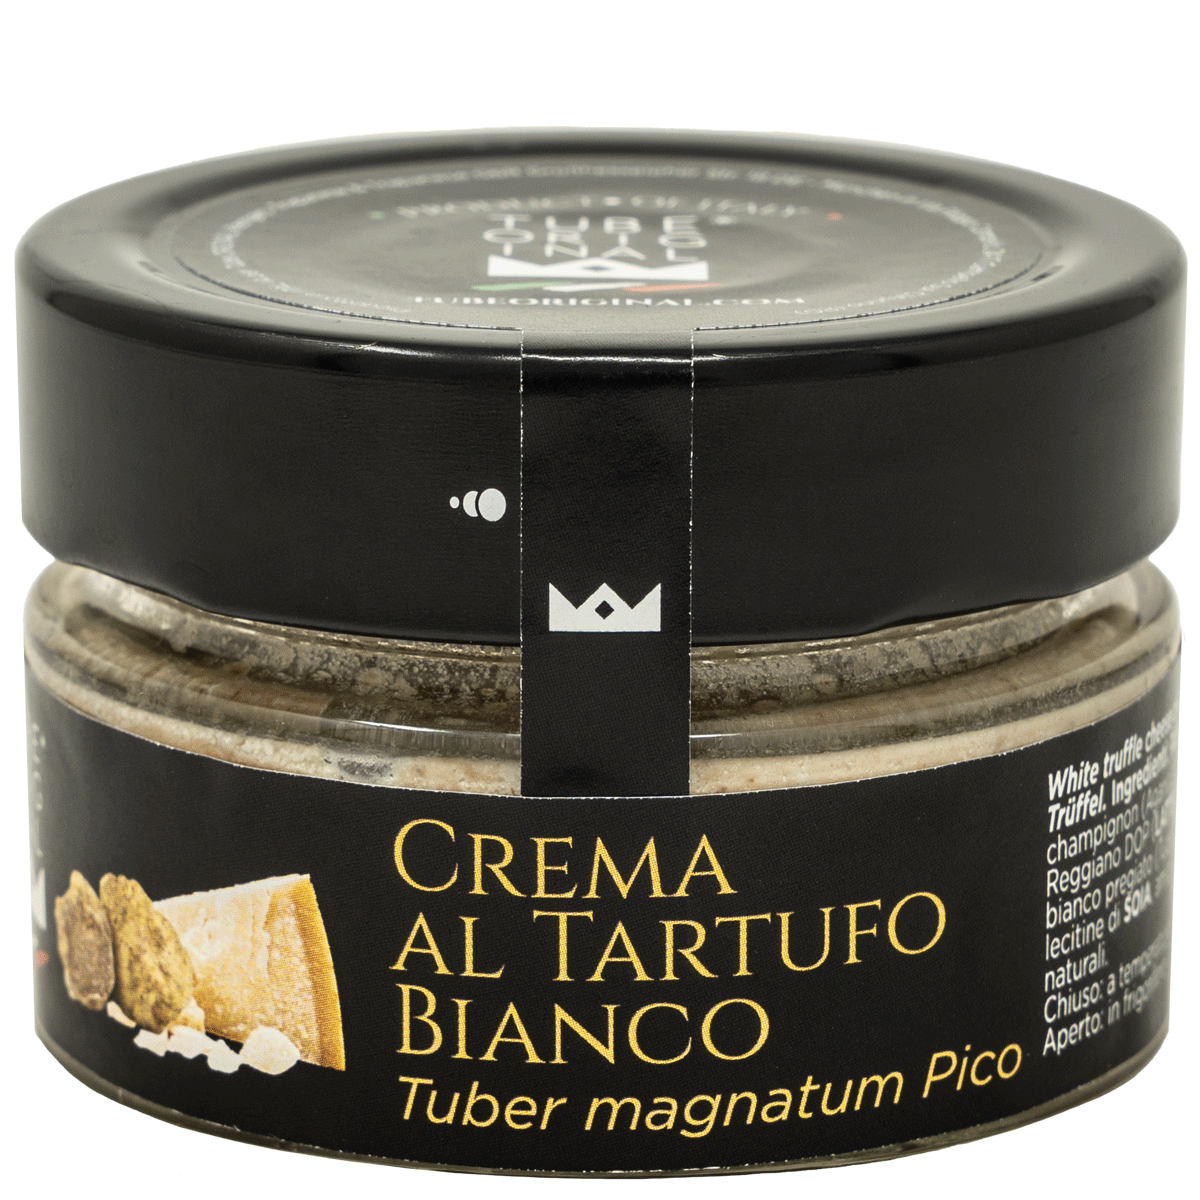 White truffle cream